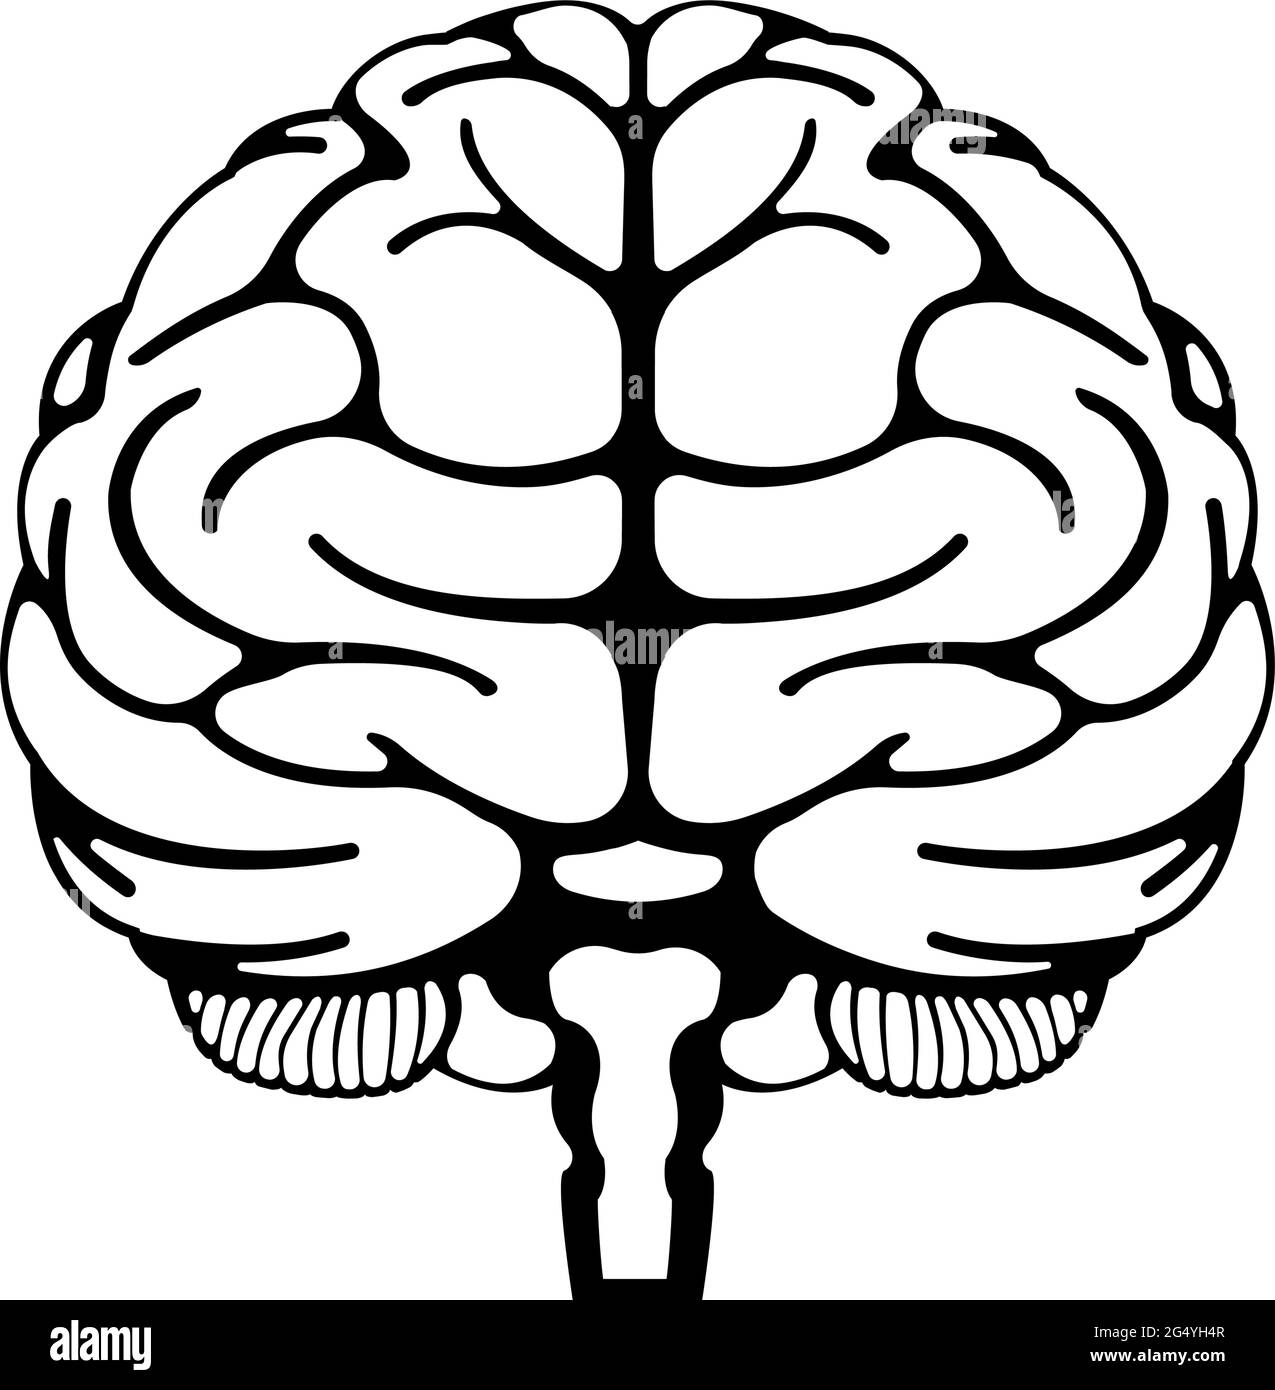 Illustrazione vettoriale del cervello umano (vista frontale) Illustrazione Vettoriale